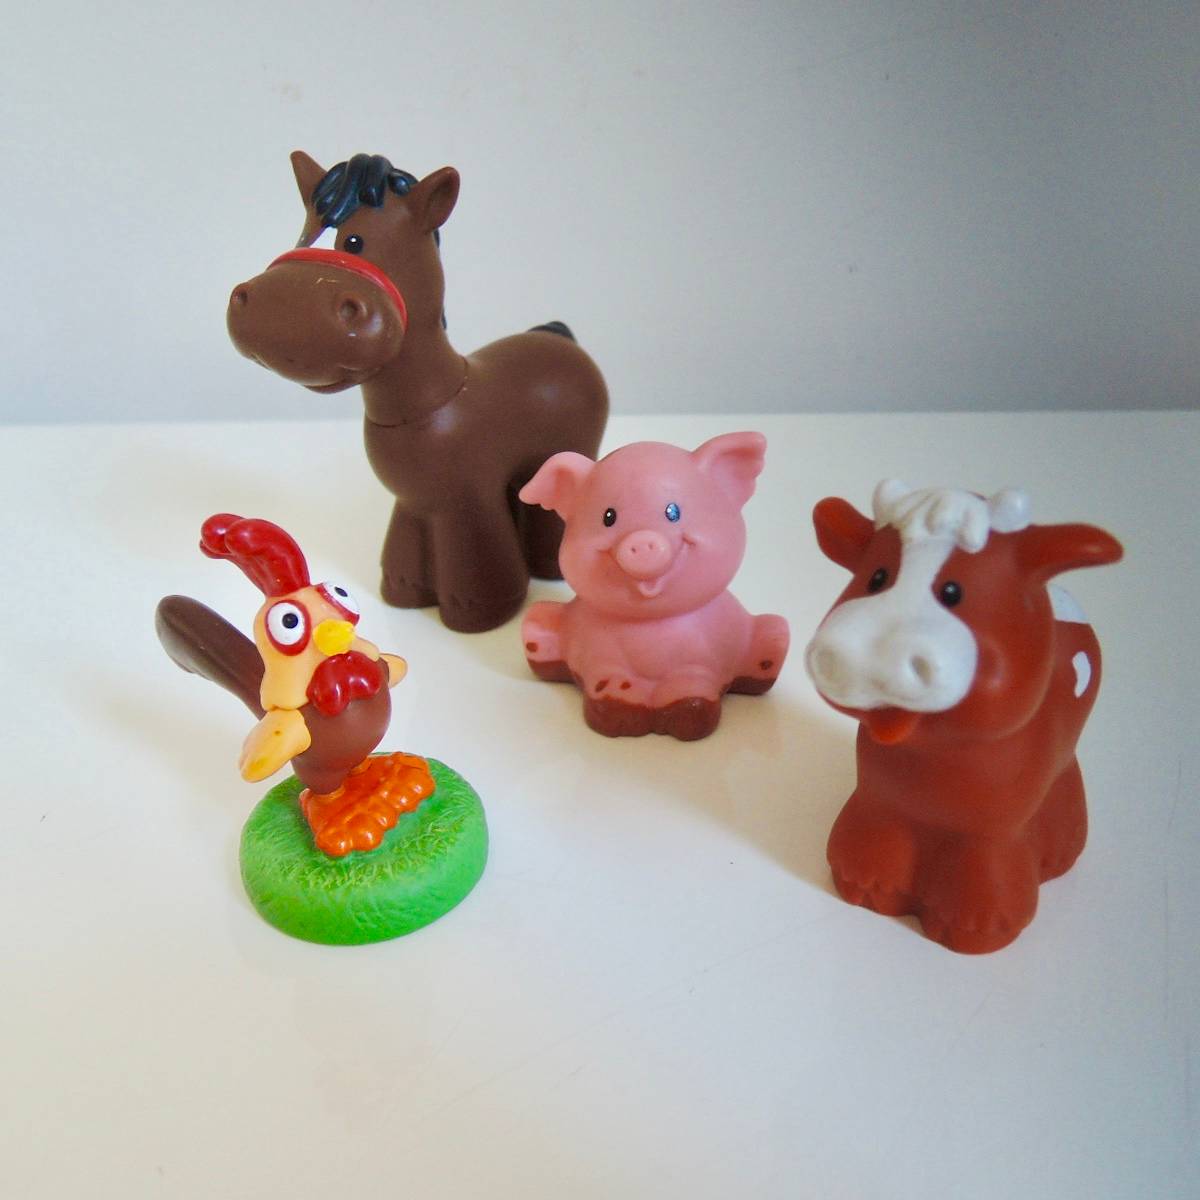 Jouets figurines d'animaux de la ferme